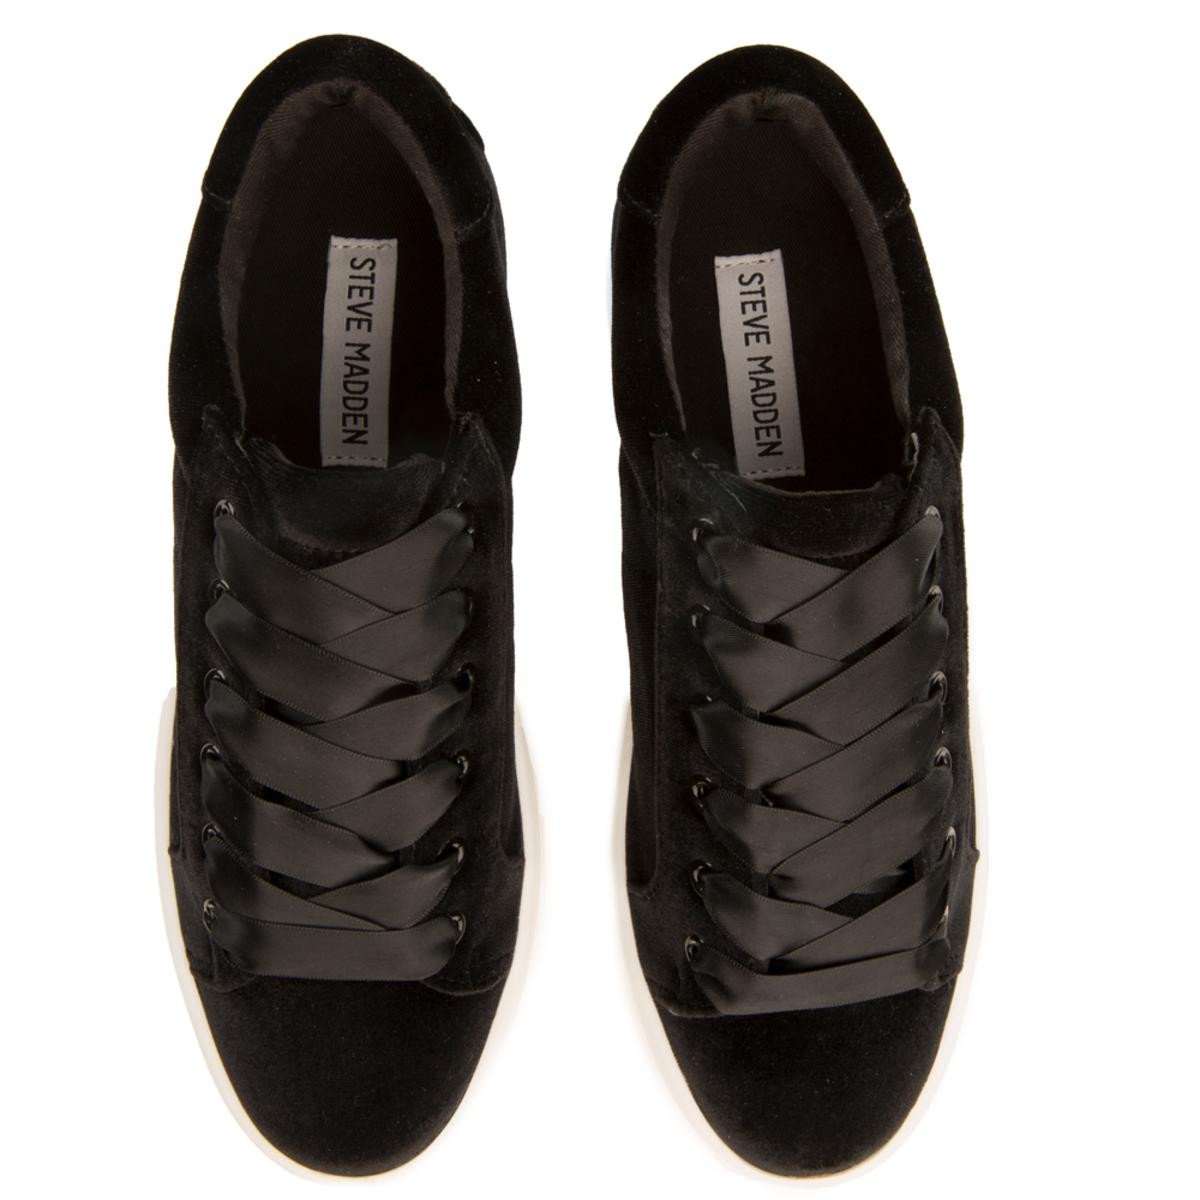 Steve Madden for Women: Bertie-V Black Platform Sneakers